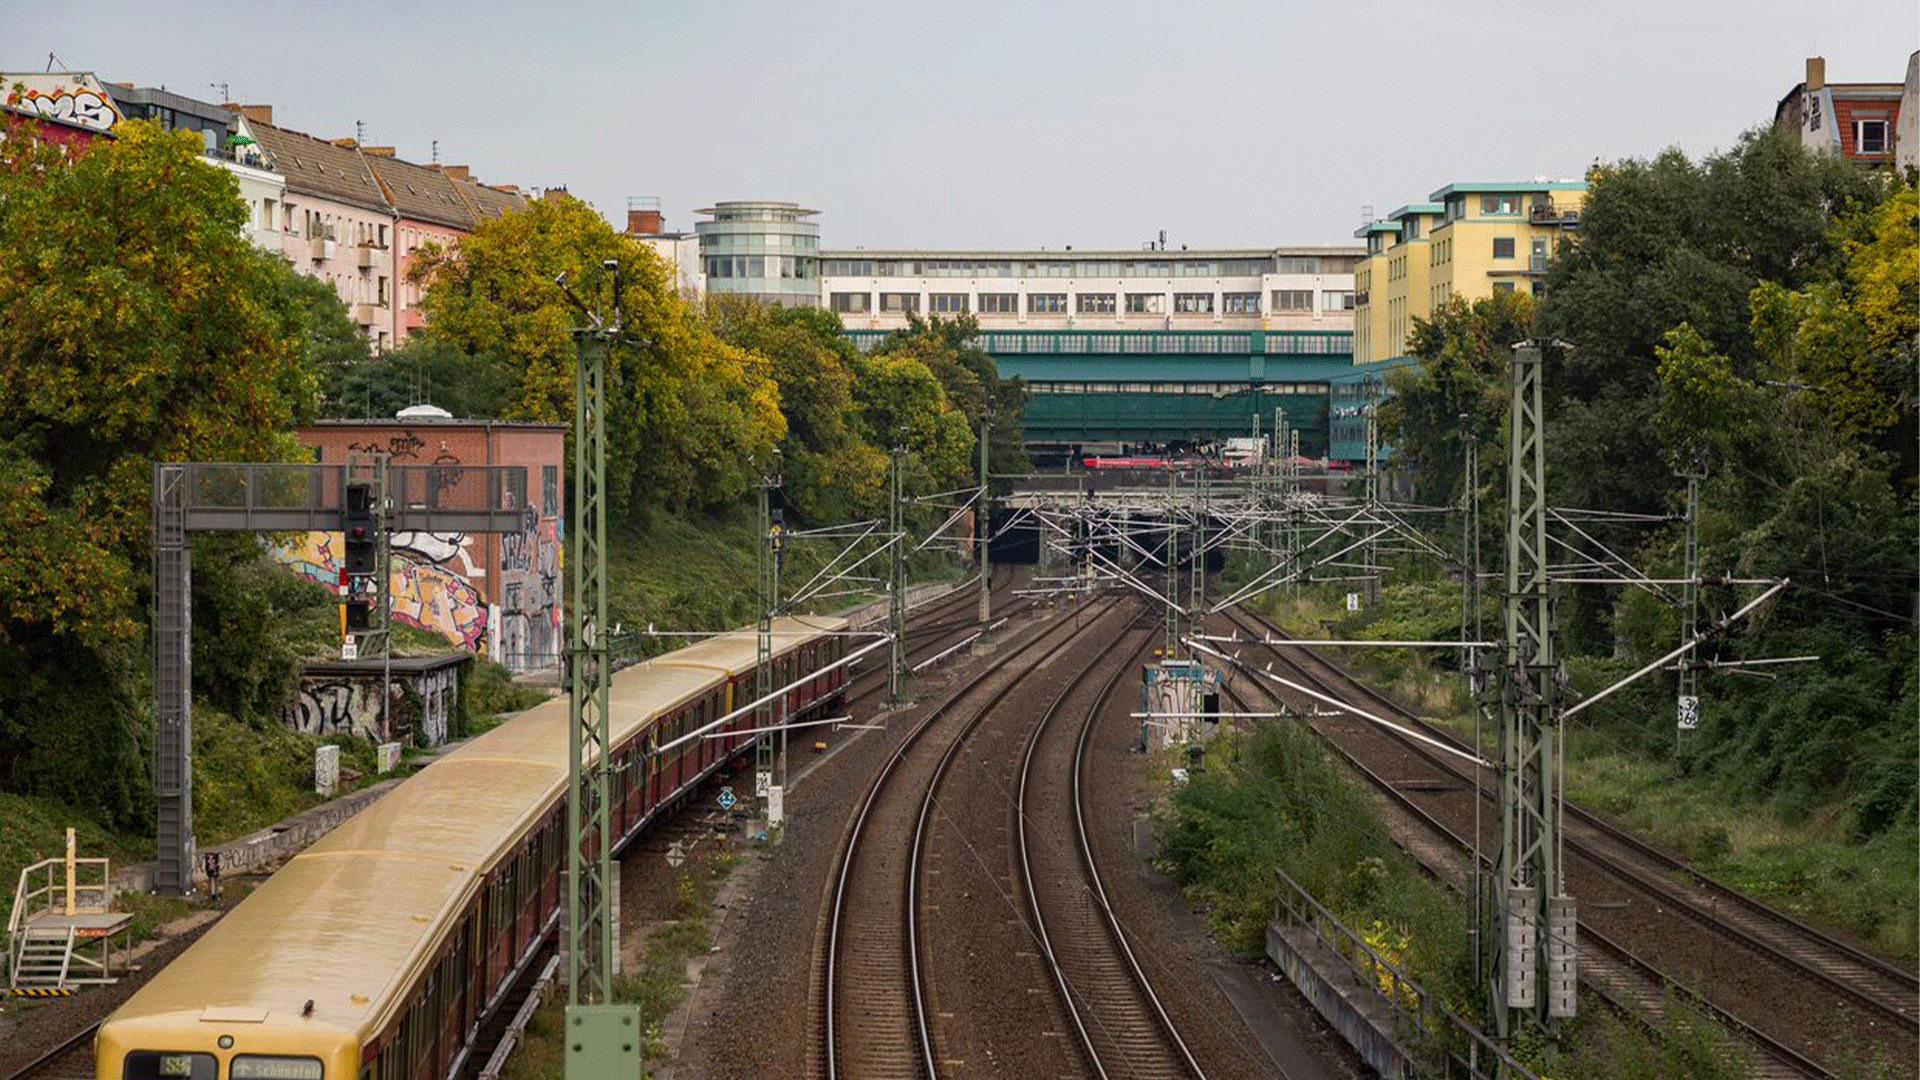 Ringbahn by Tony Webster(CC BY-SA 2.0)